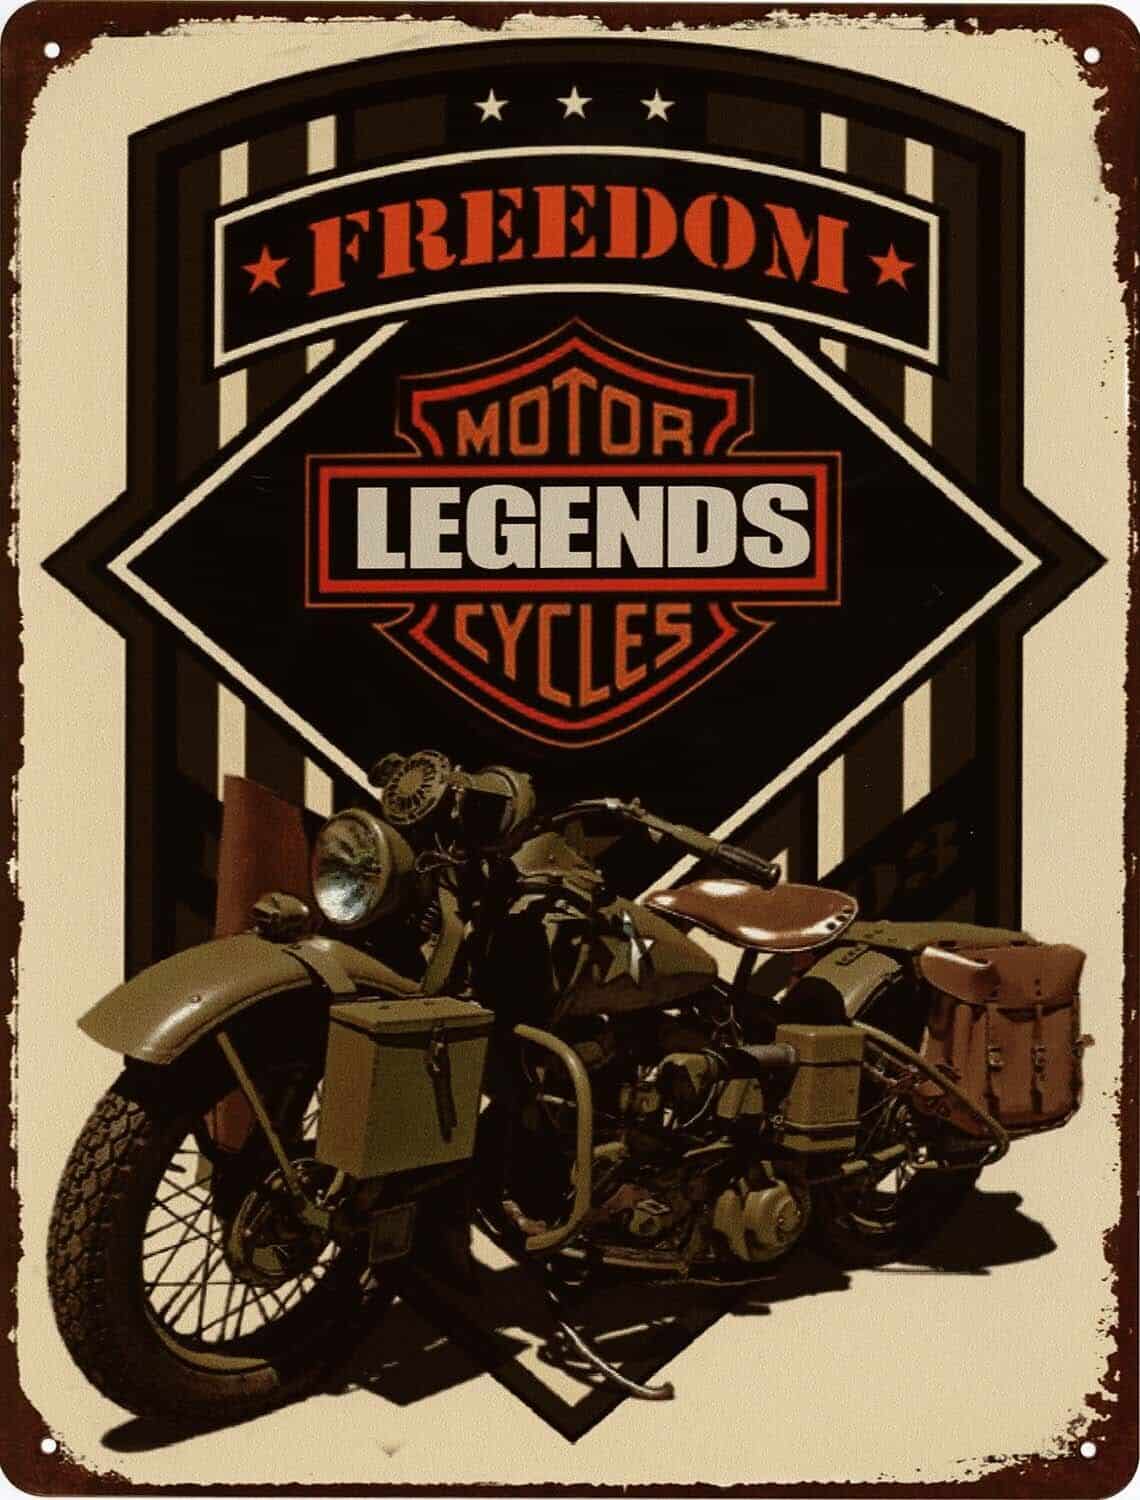 Blechschild Freedom Motor Legends Cycles 25 x 33 cm Metallschild Wandschild